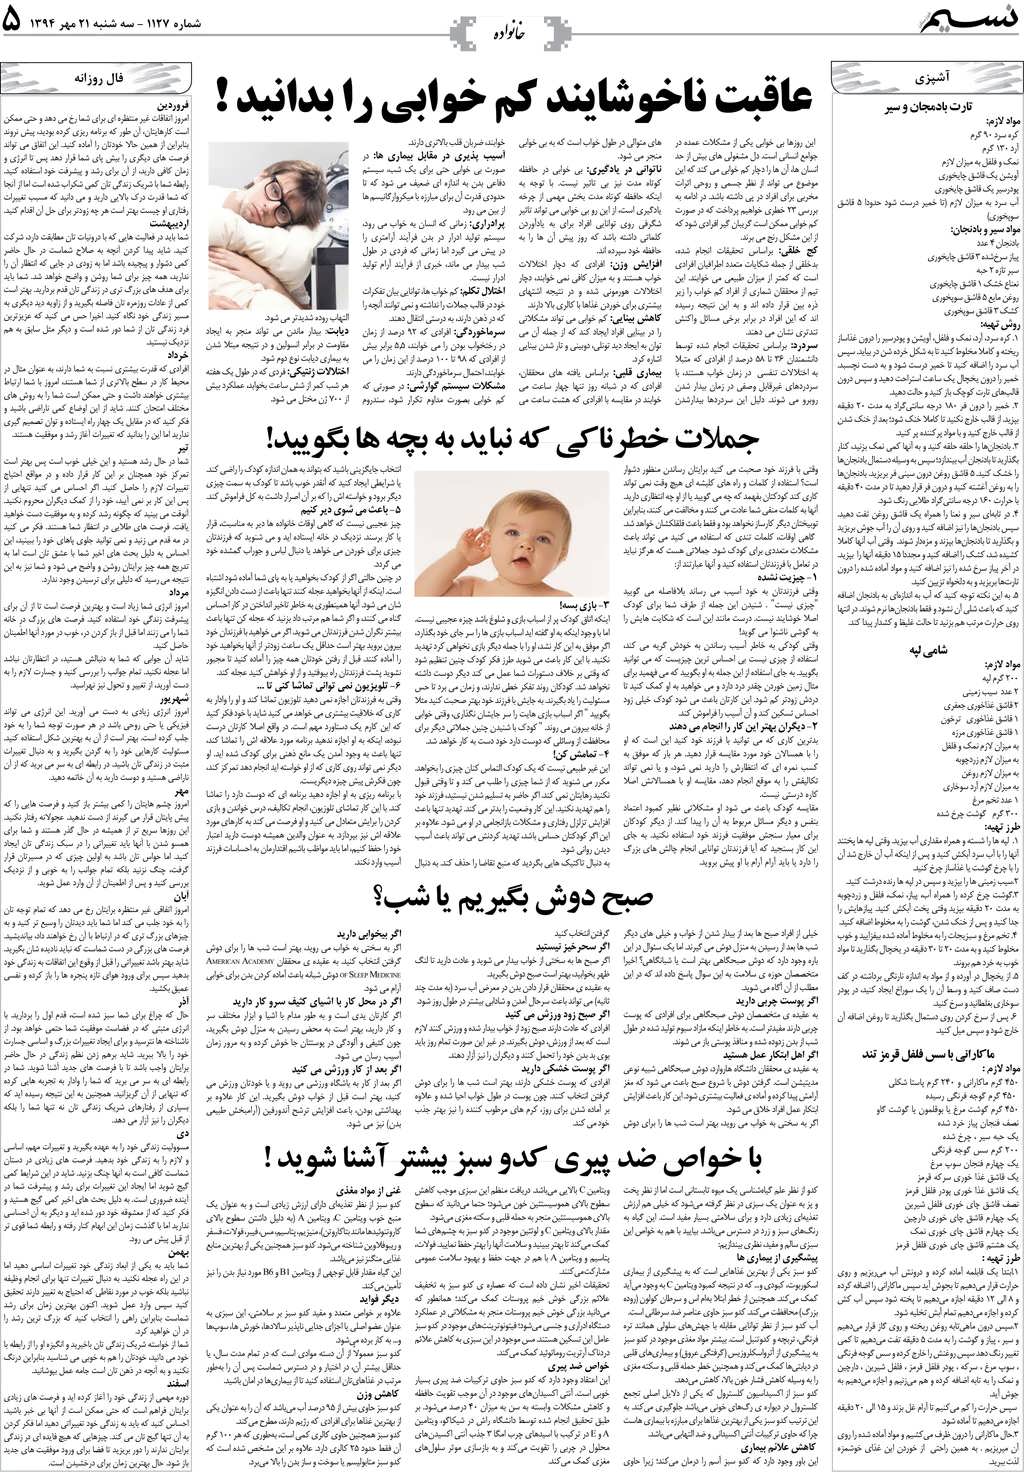 صفحه خانواده روزنامه نسیم شماره 1127